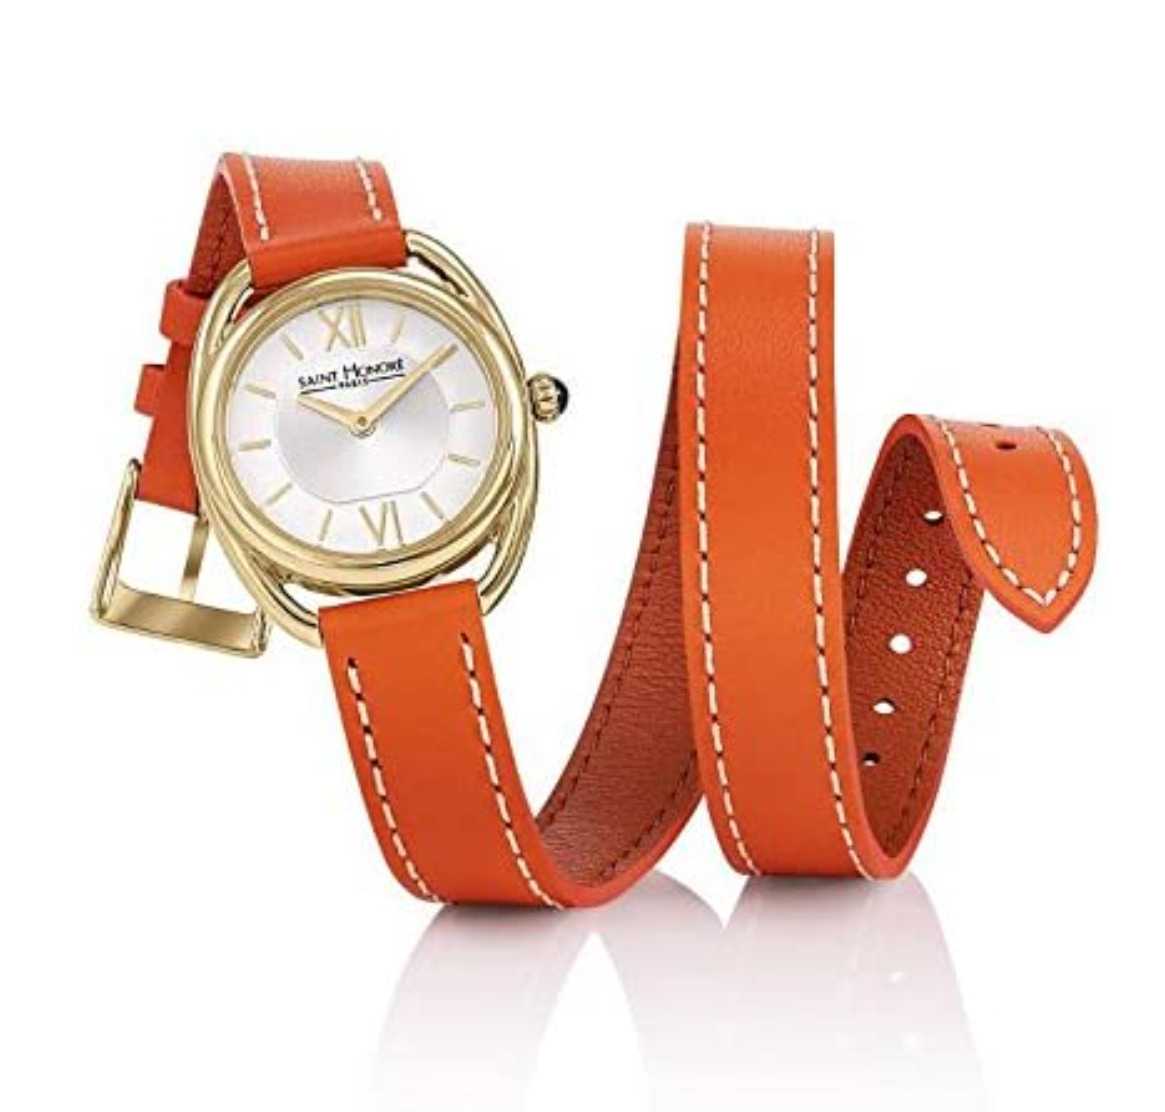 Saint Honoré Women's Analogue Quartz Watch + Orange Leather Strap 7215263AIT-O